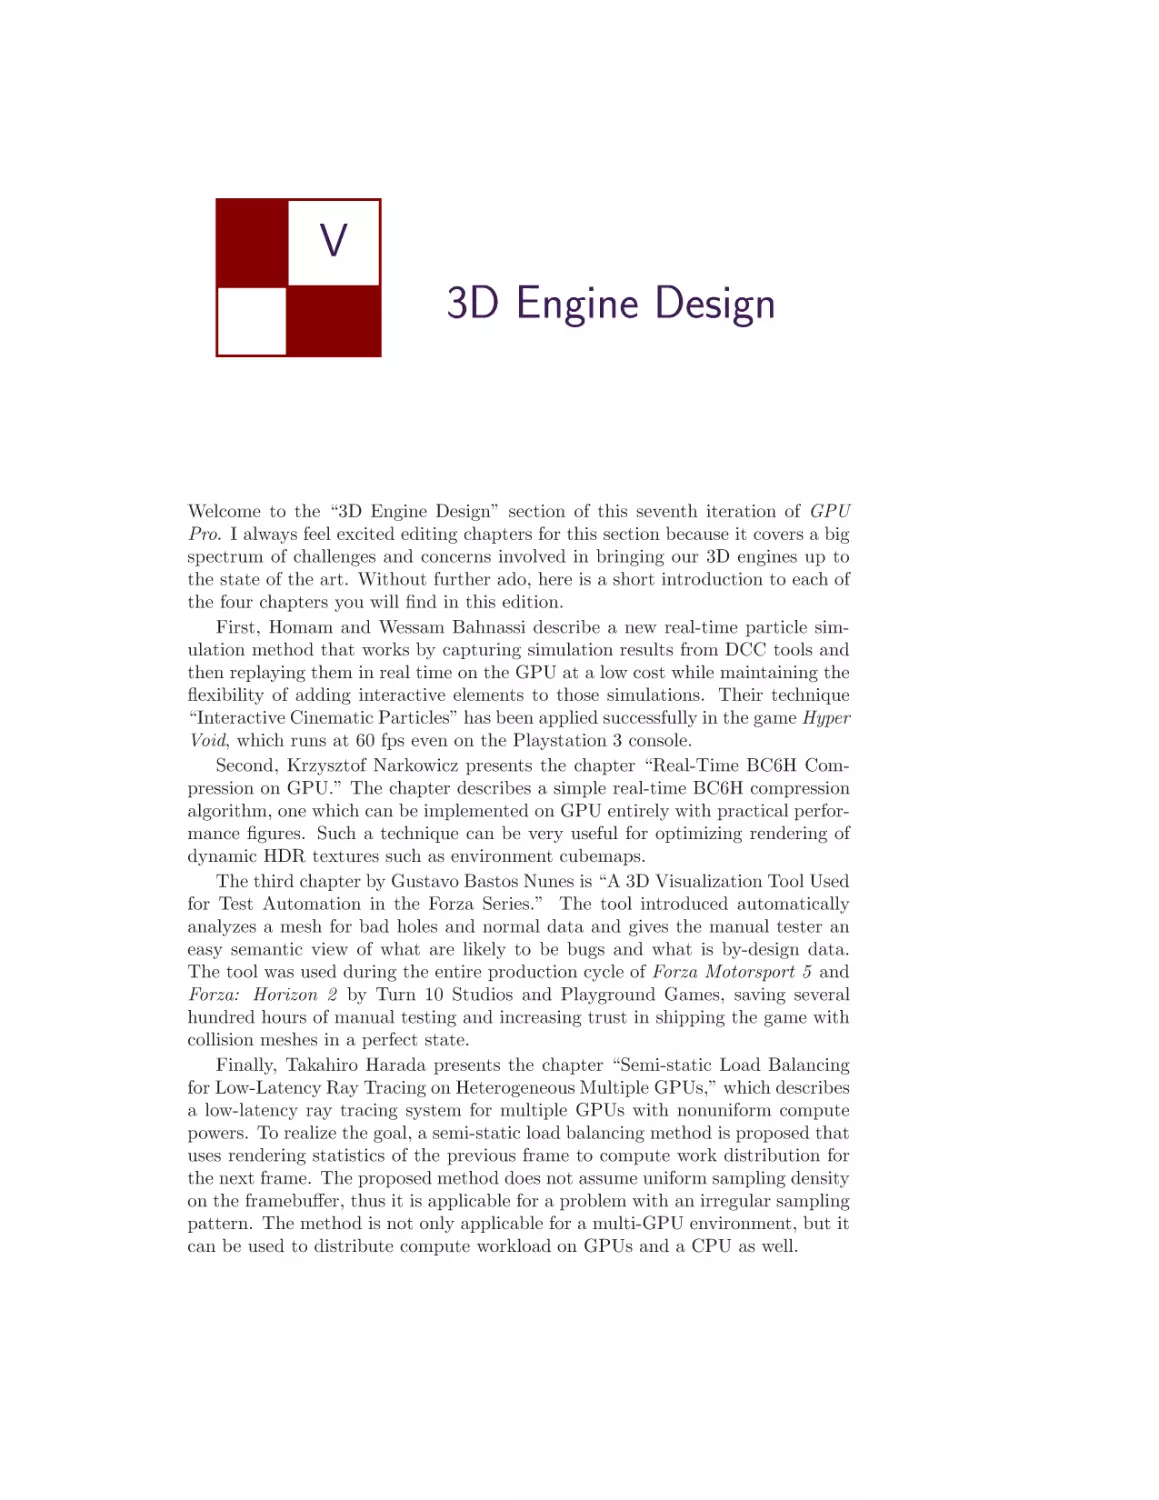 V. 3D Engine Design